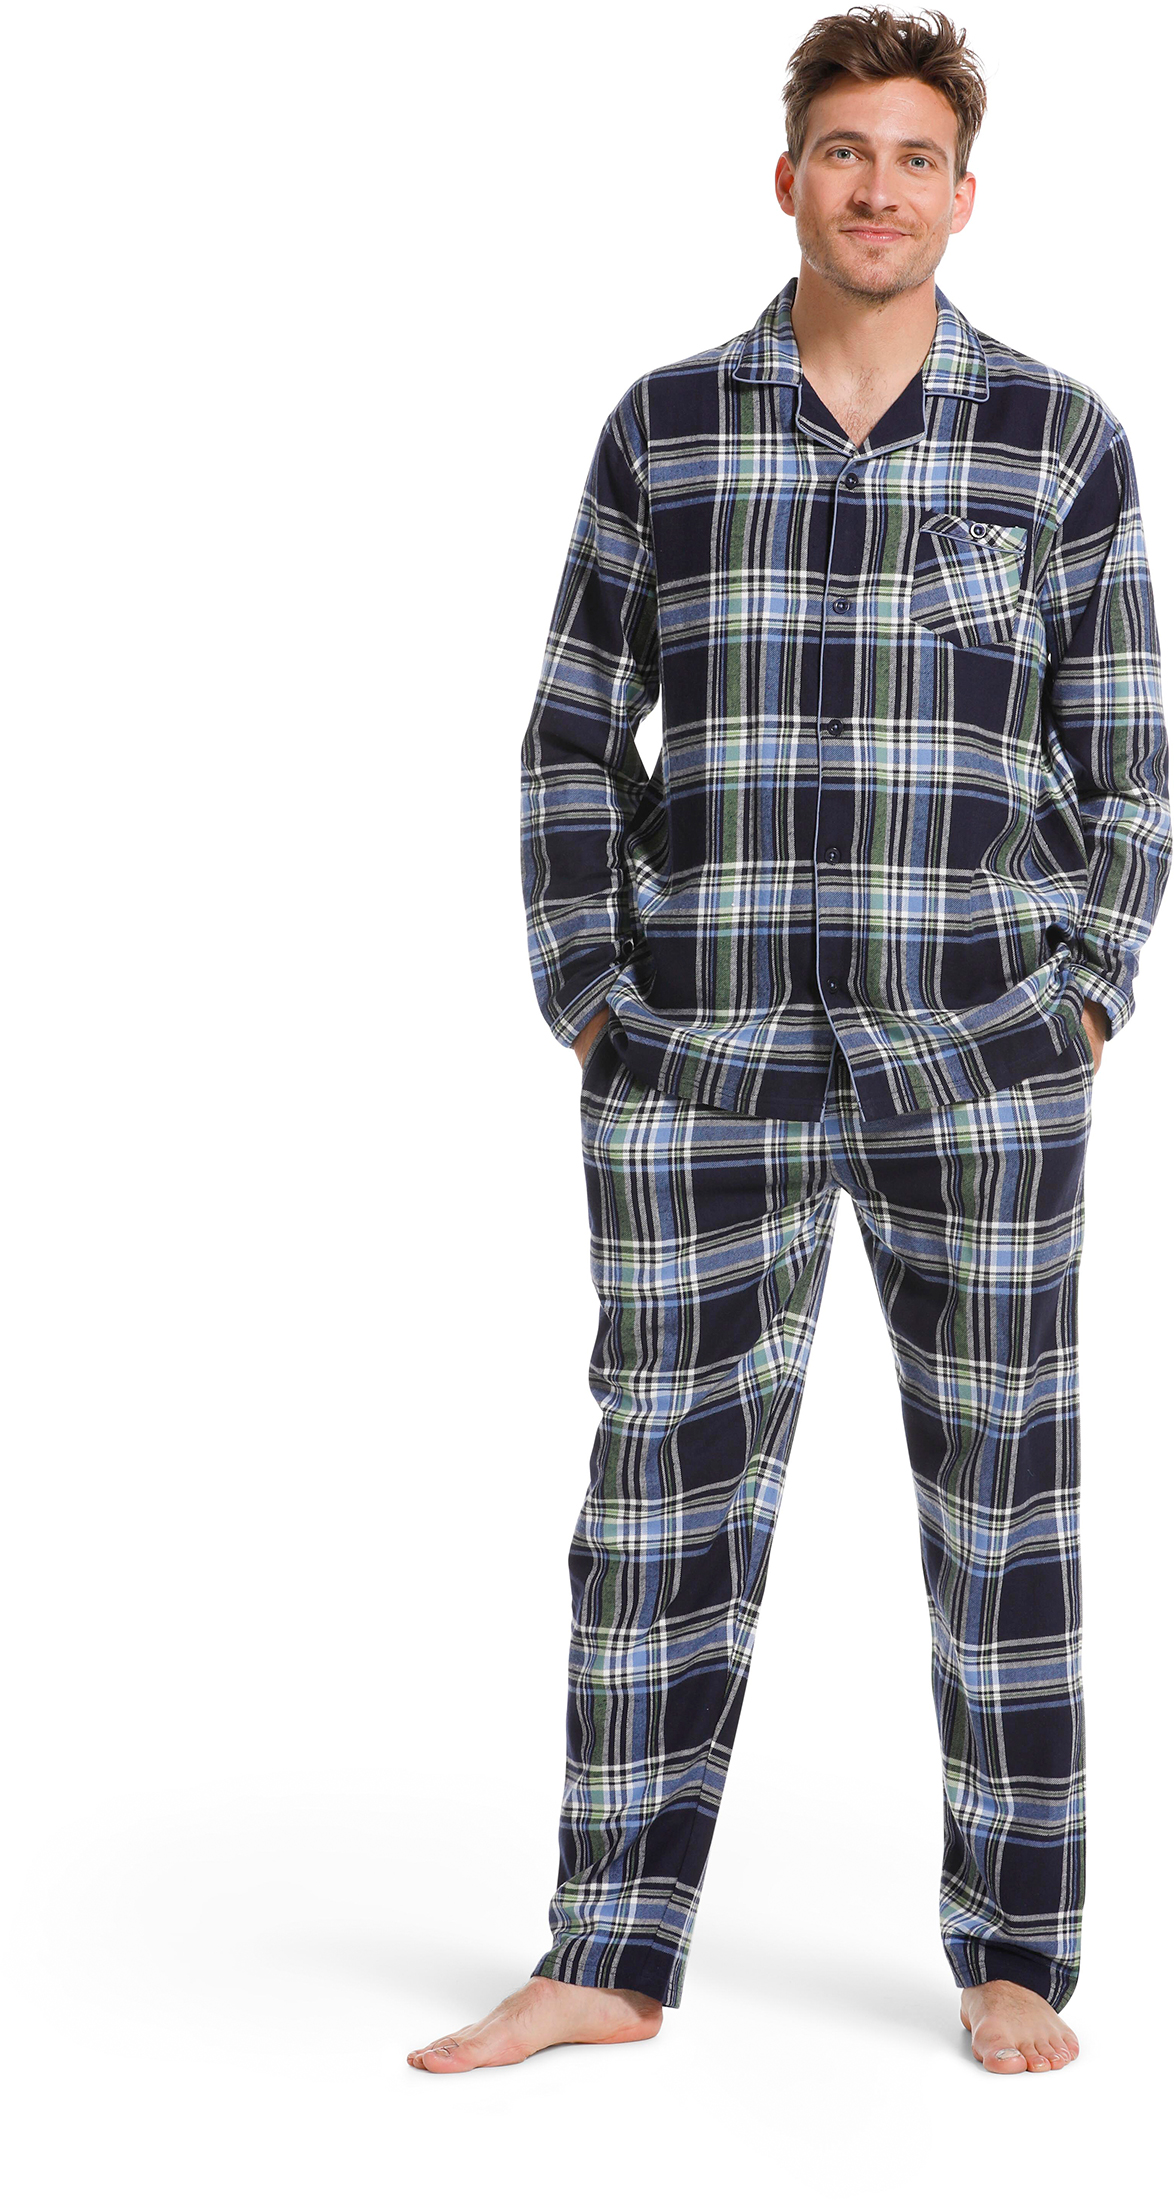 Pastunette heren pyjama flanel 23222-620-6 - Blauw - L/52